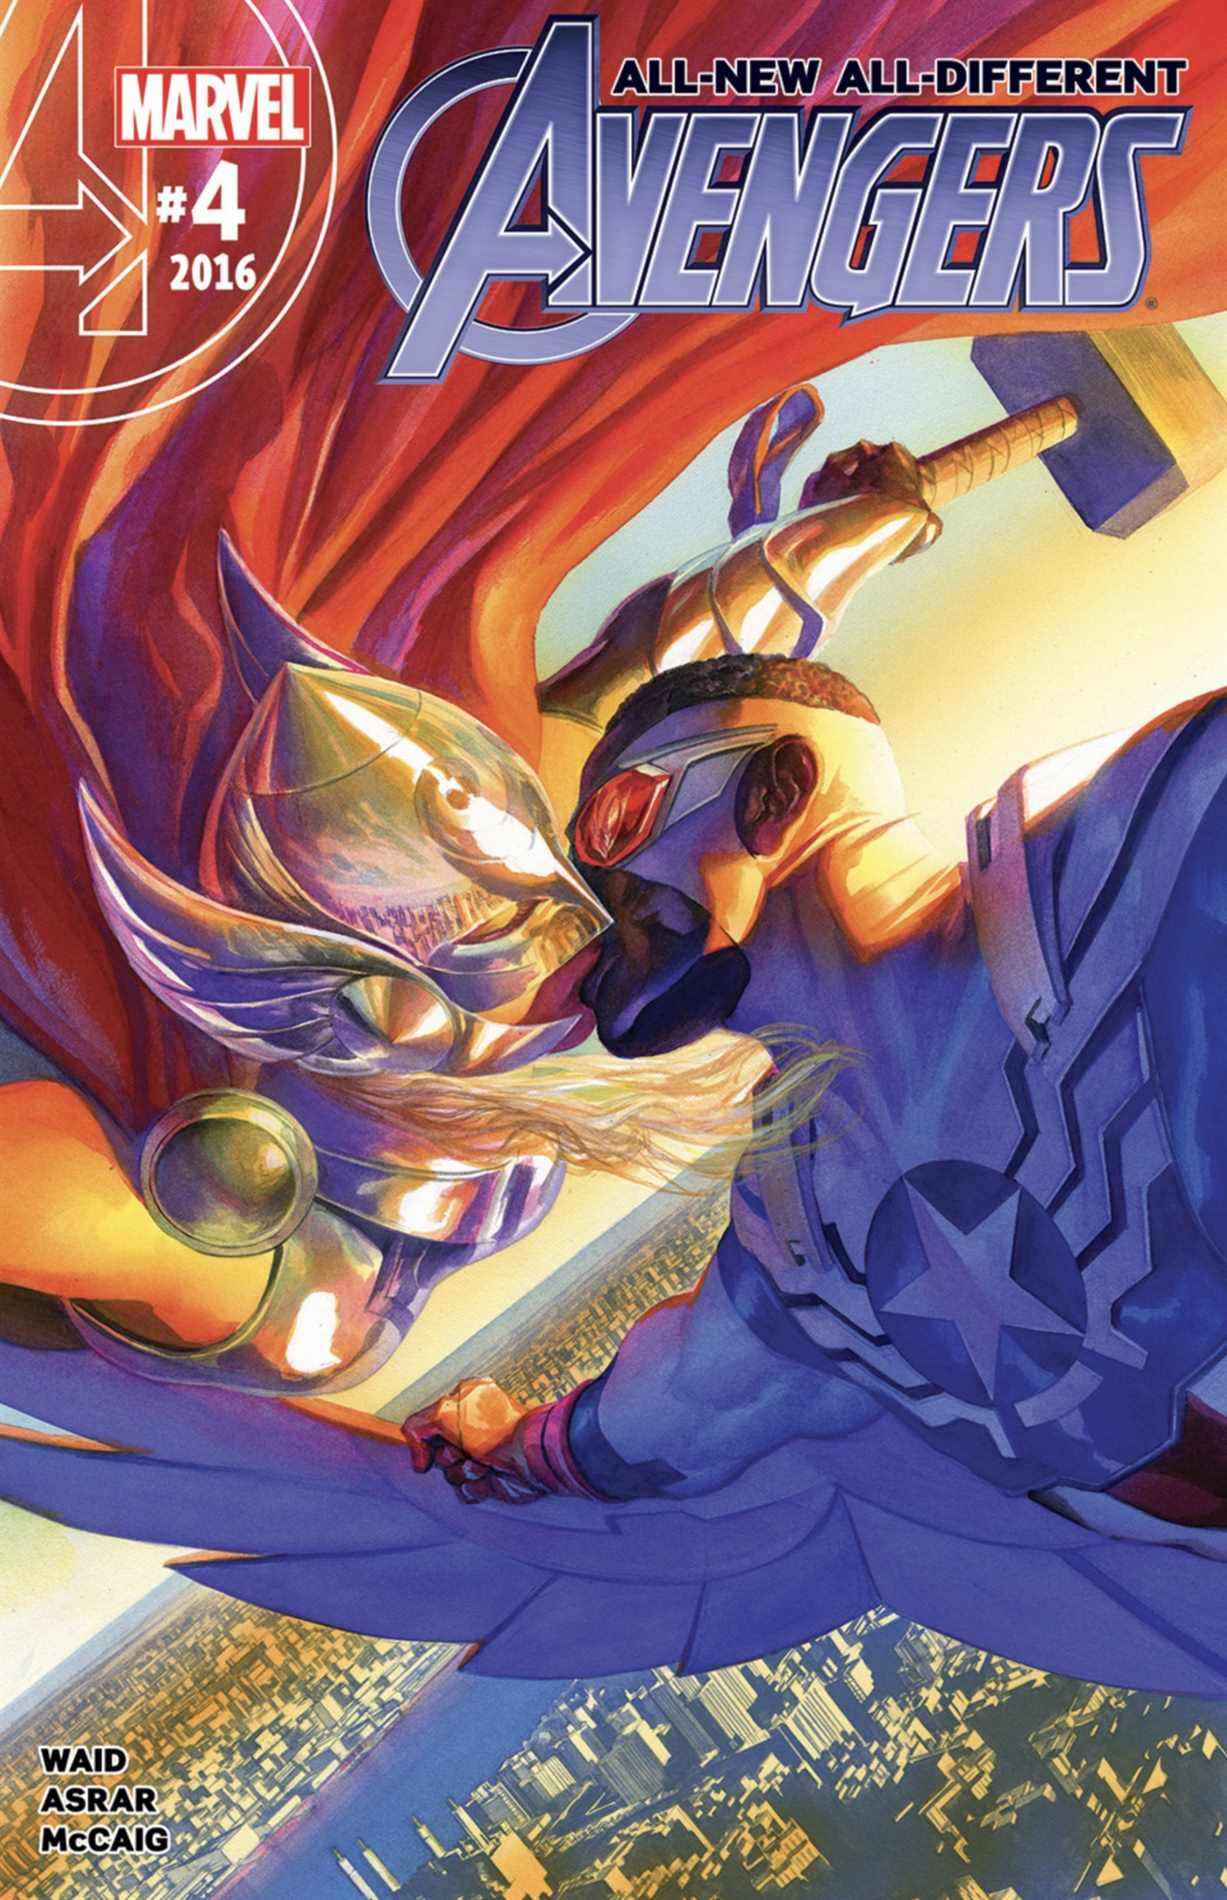 La toute nouvelle couverture All-Different Avengers #4